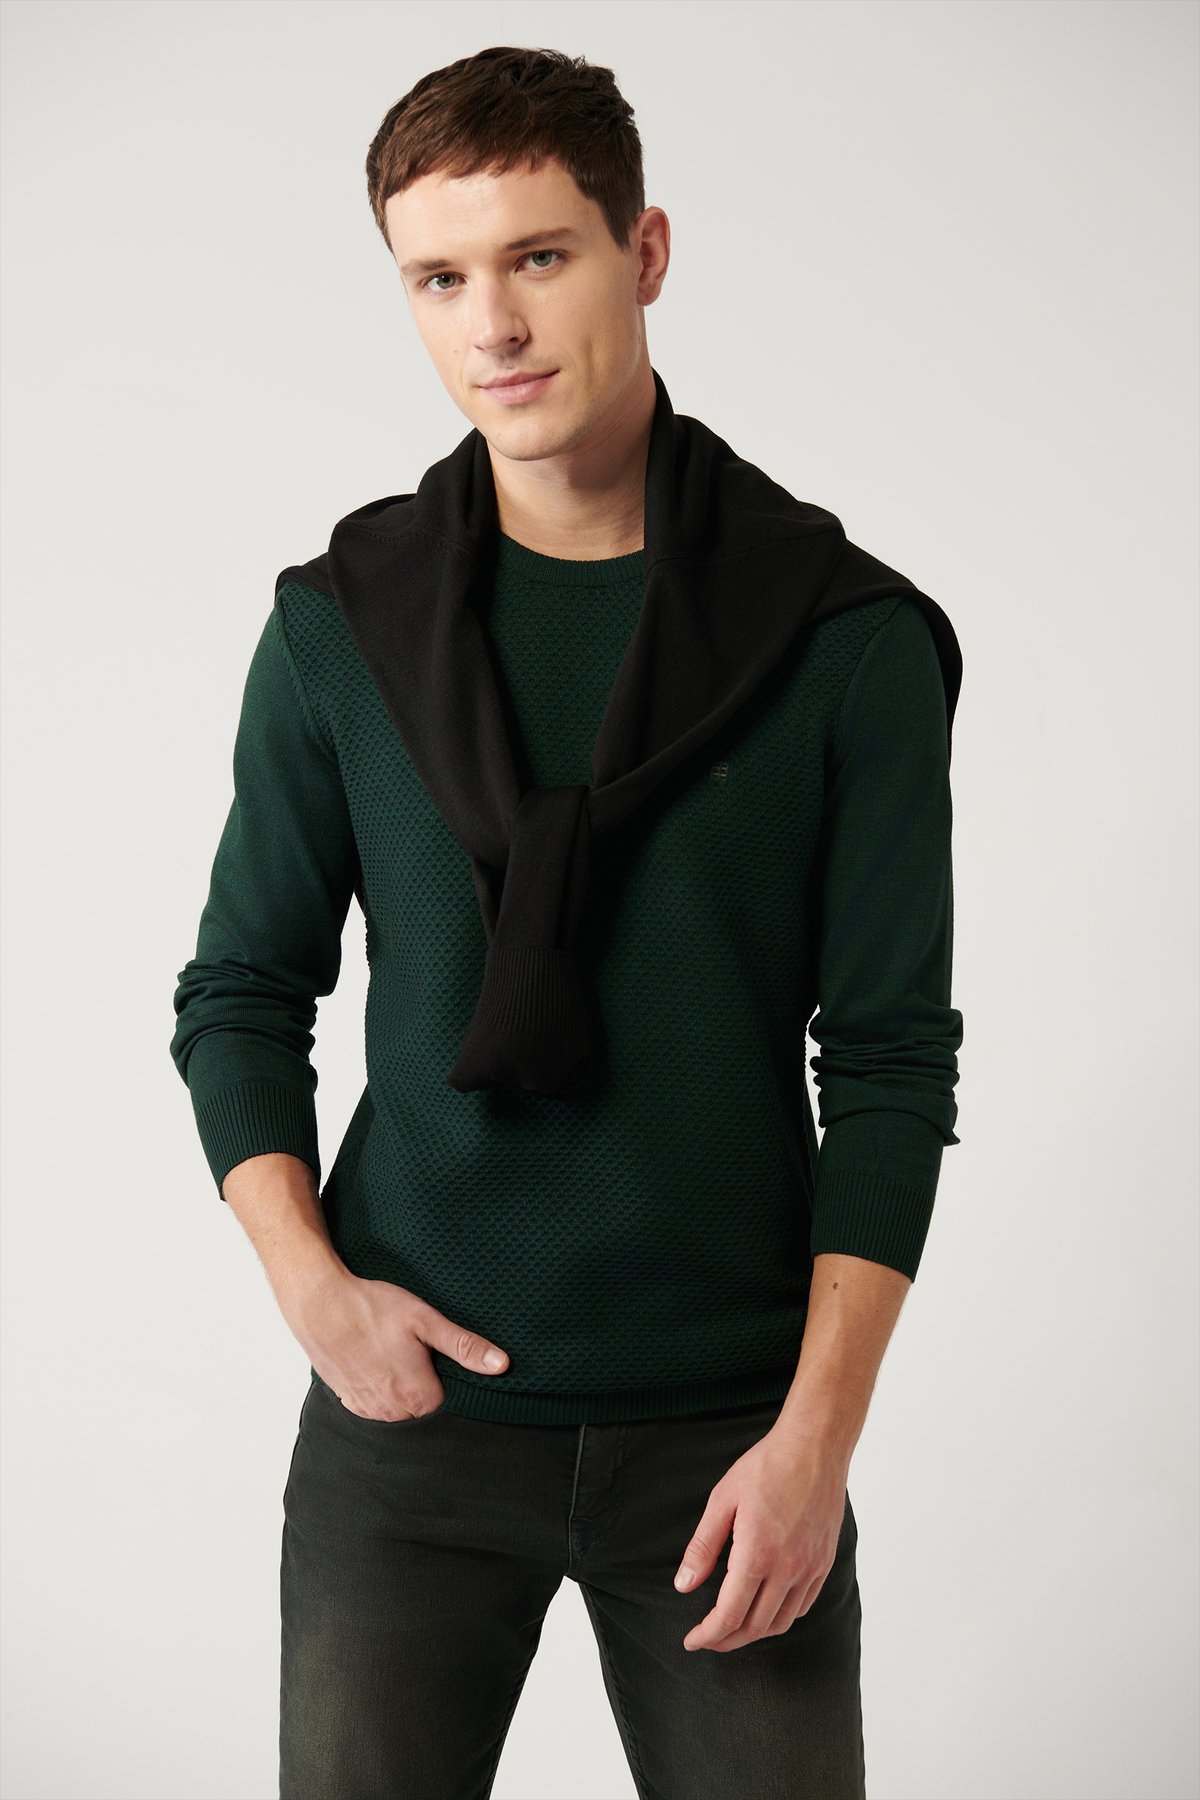 Levně Avva Men's Green Knitwear Sweater Crew Neck Front Textured Cotton Regular Fit